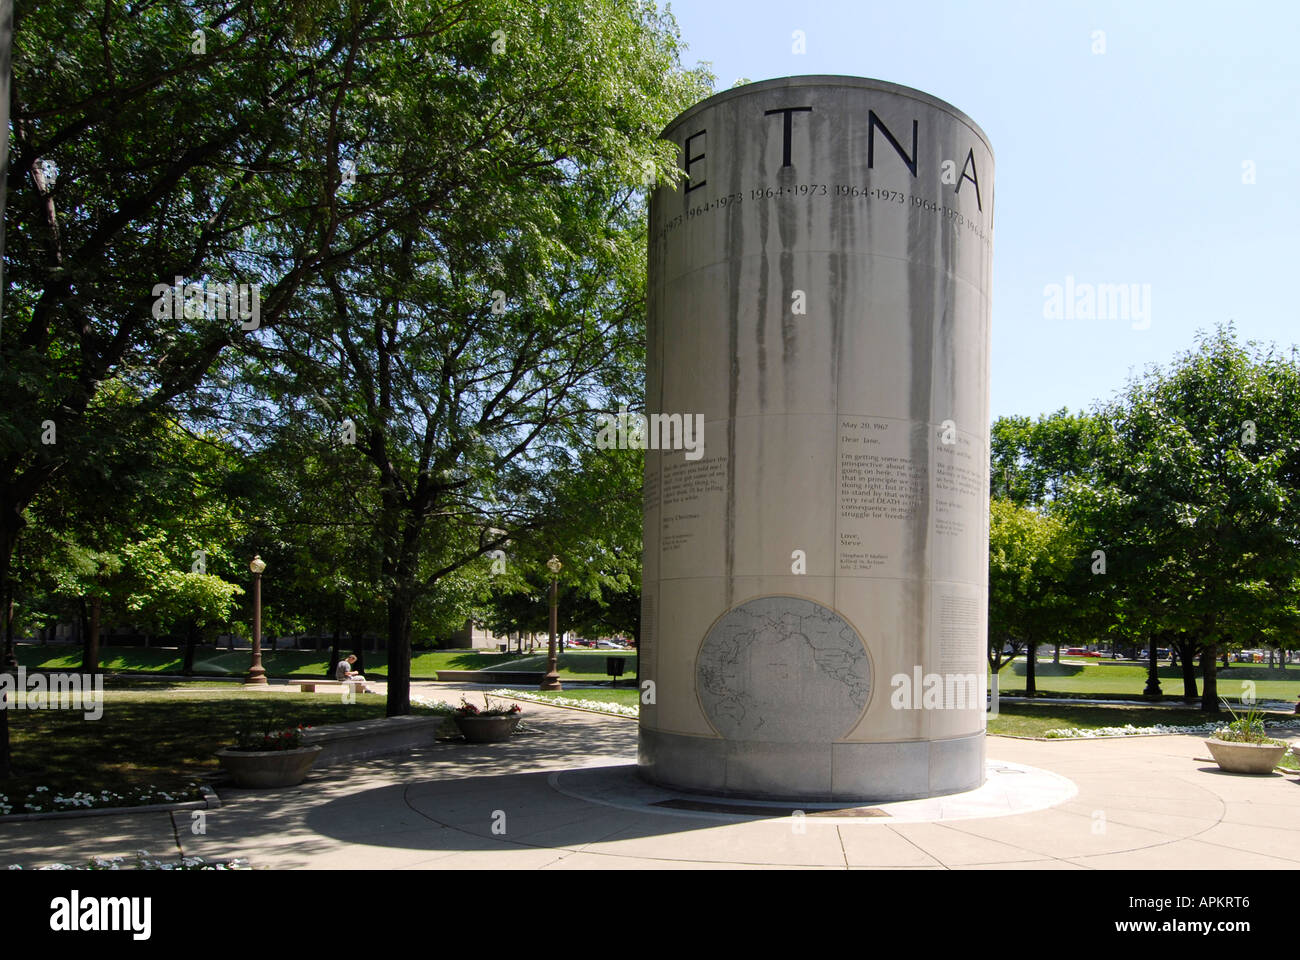 Le Vietnam à l'Université Memorial Park de commémorer la guerre Histoire du centre-ville d'Indianapolis dans l'Indiana Banque D'Images